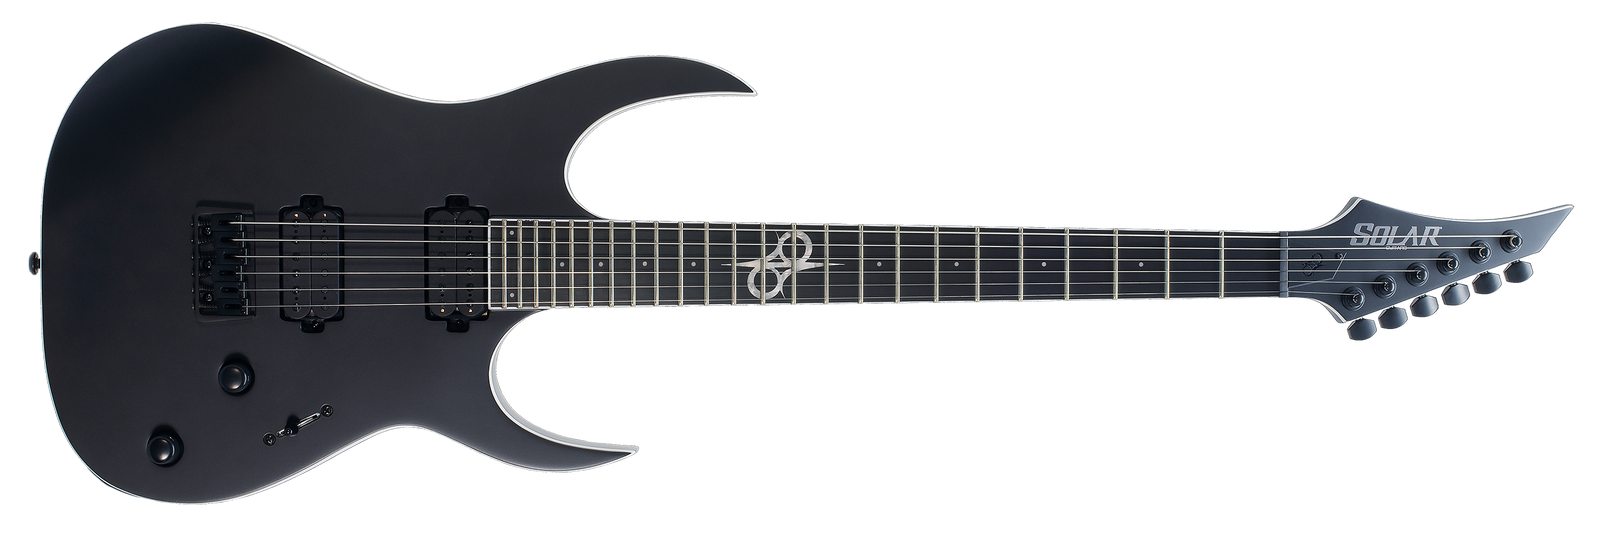 SOLAR S2.6C (G2) Electric Guitar - Carbon Black Matte